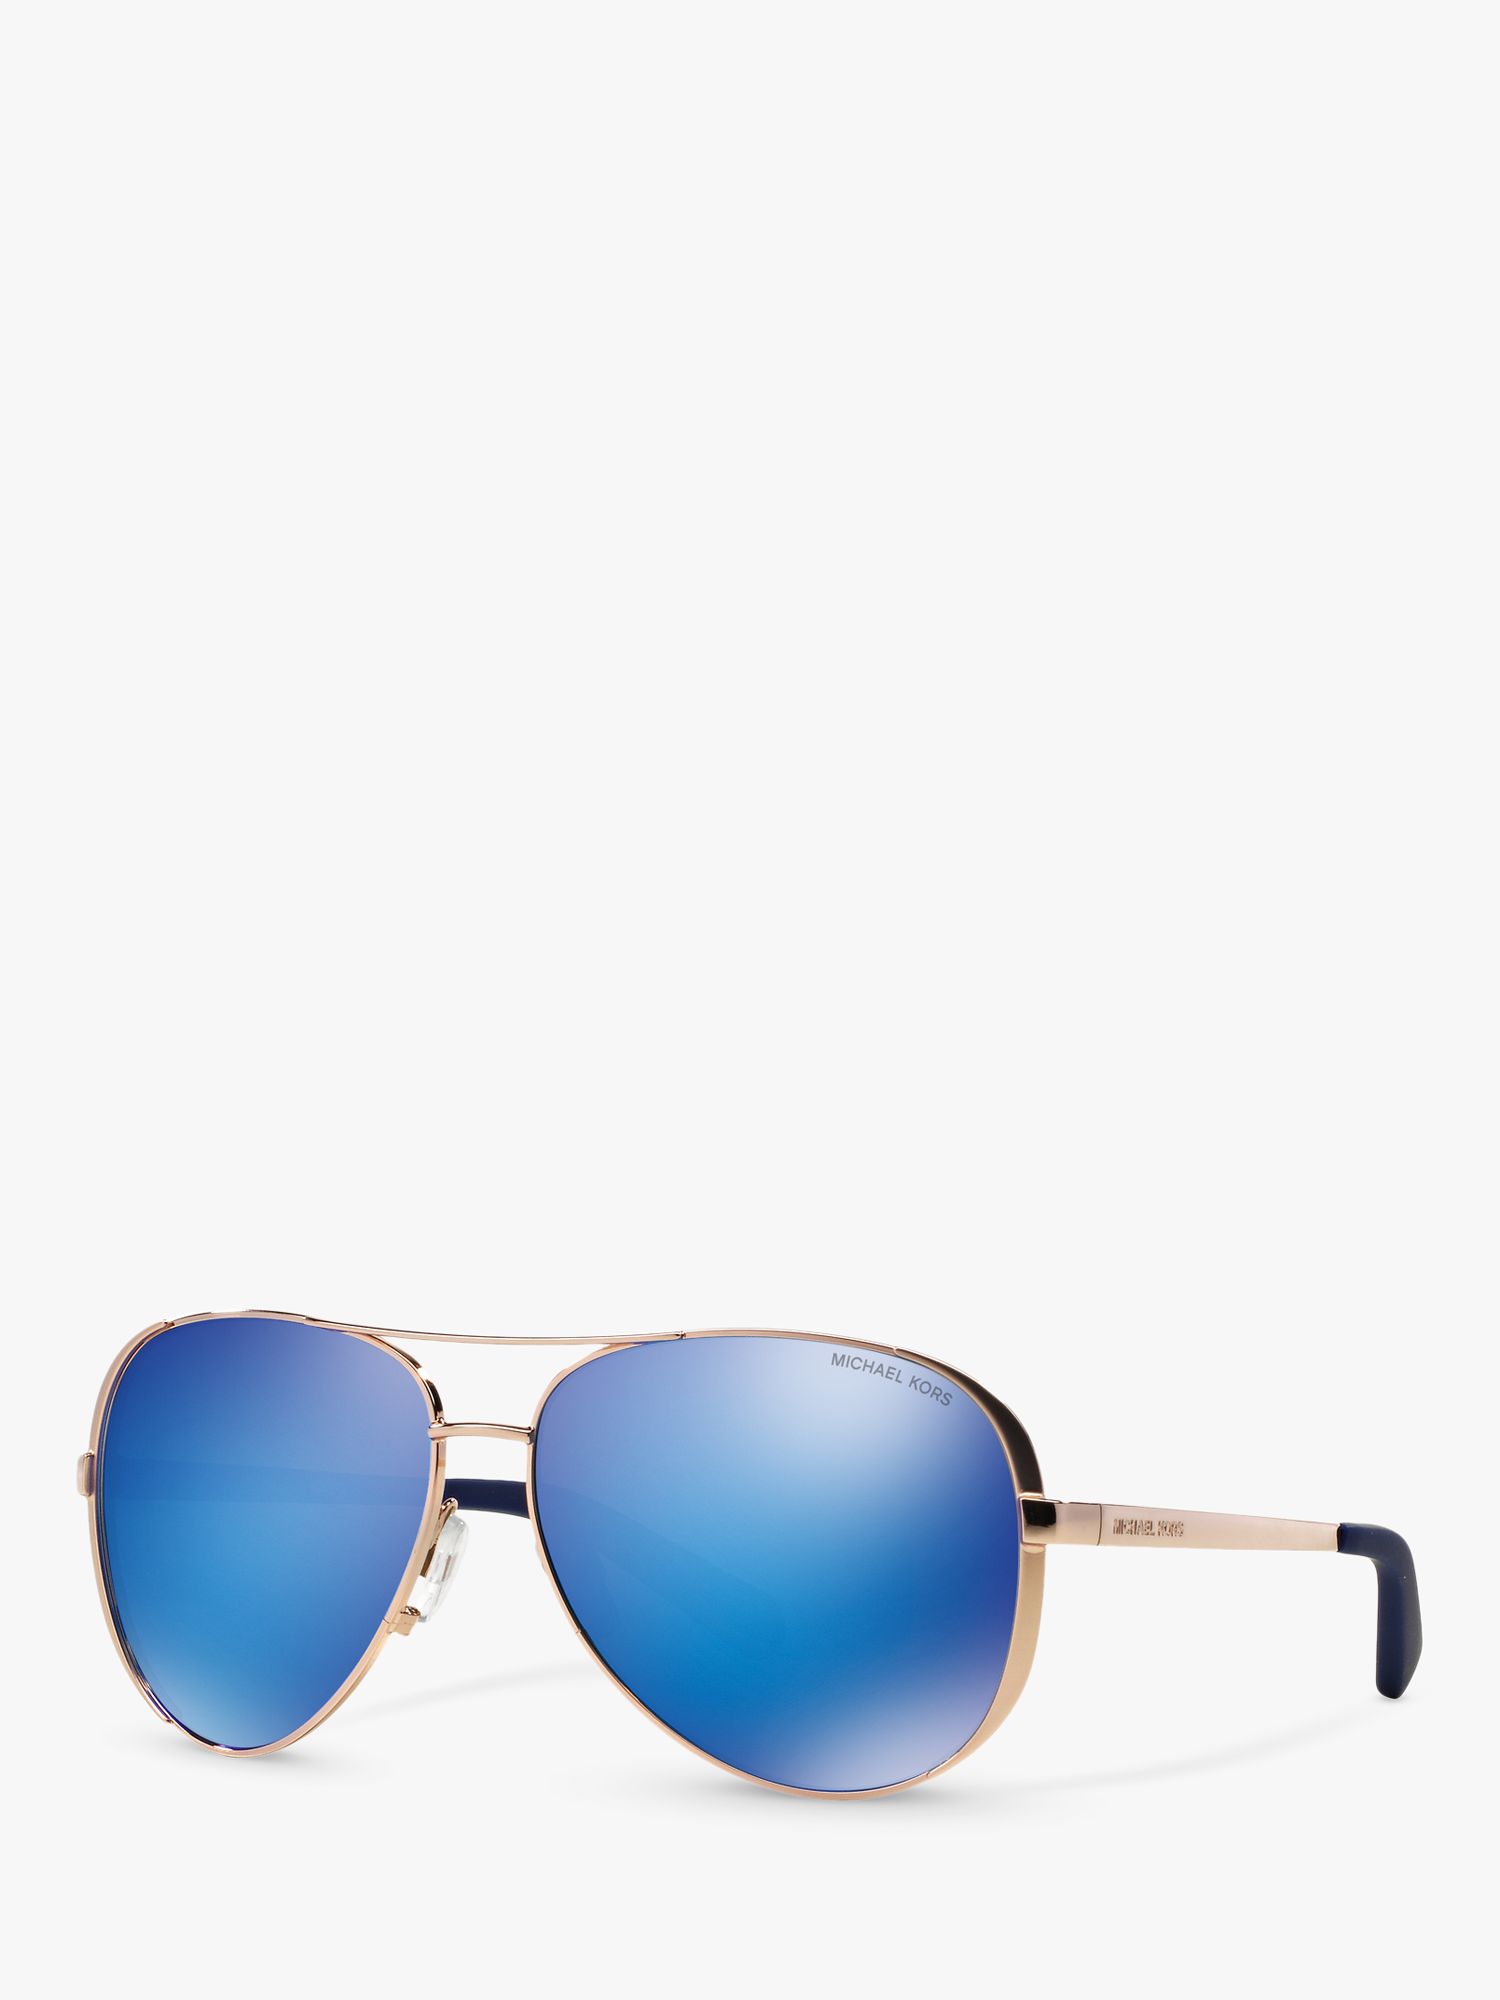 Michael Kors MK5004 Aviator Metal Sunglasses, Pink/Blue at John Lewis &  Partners